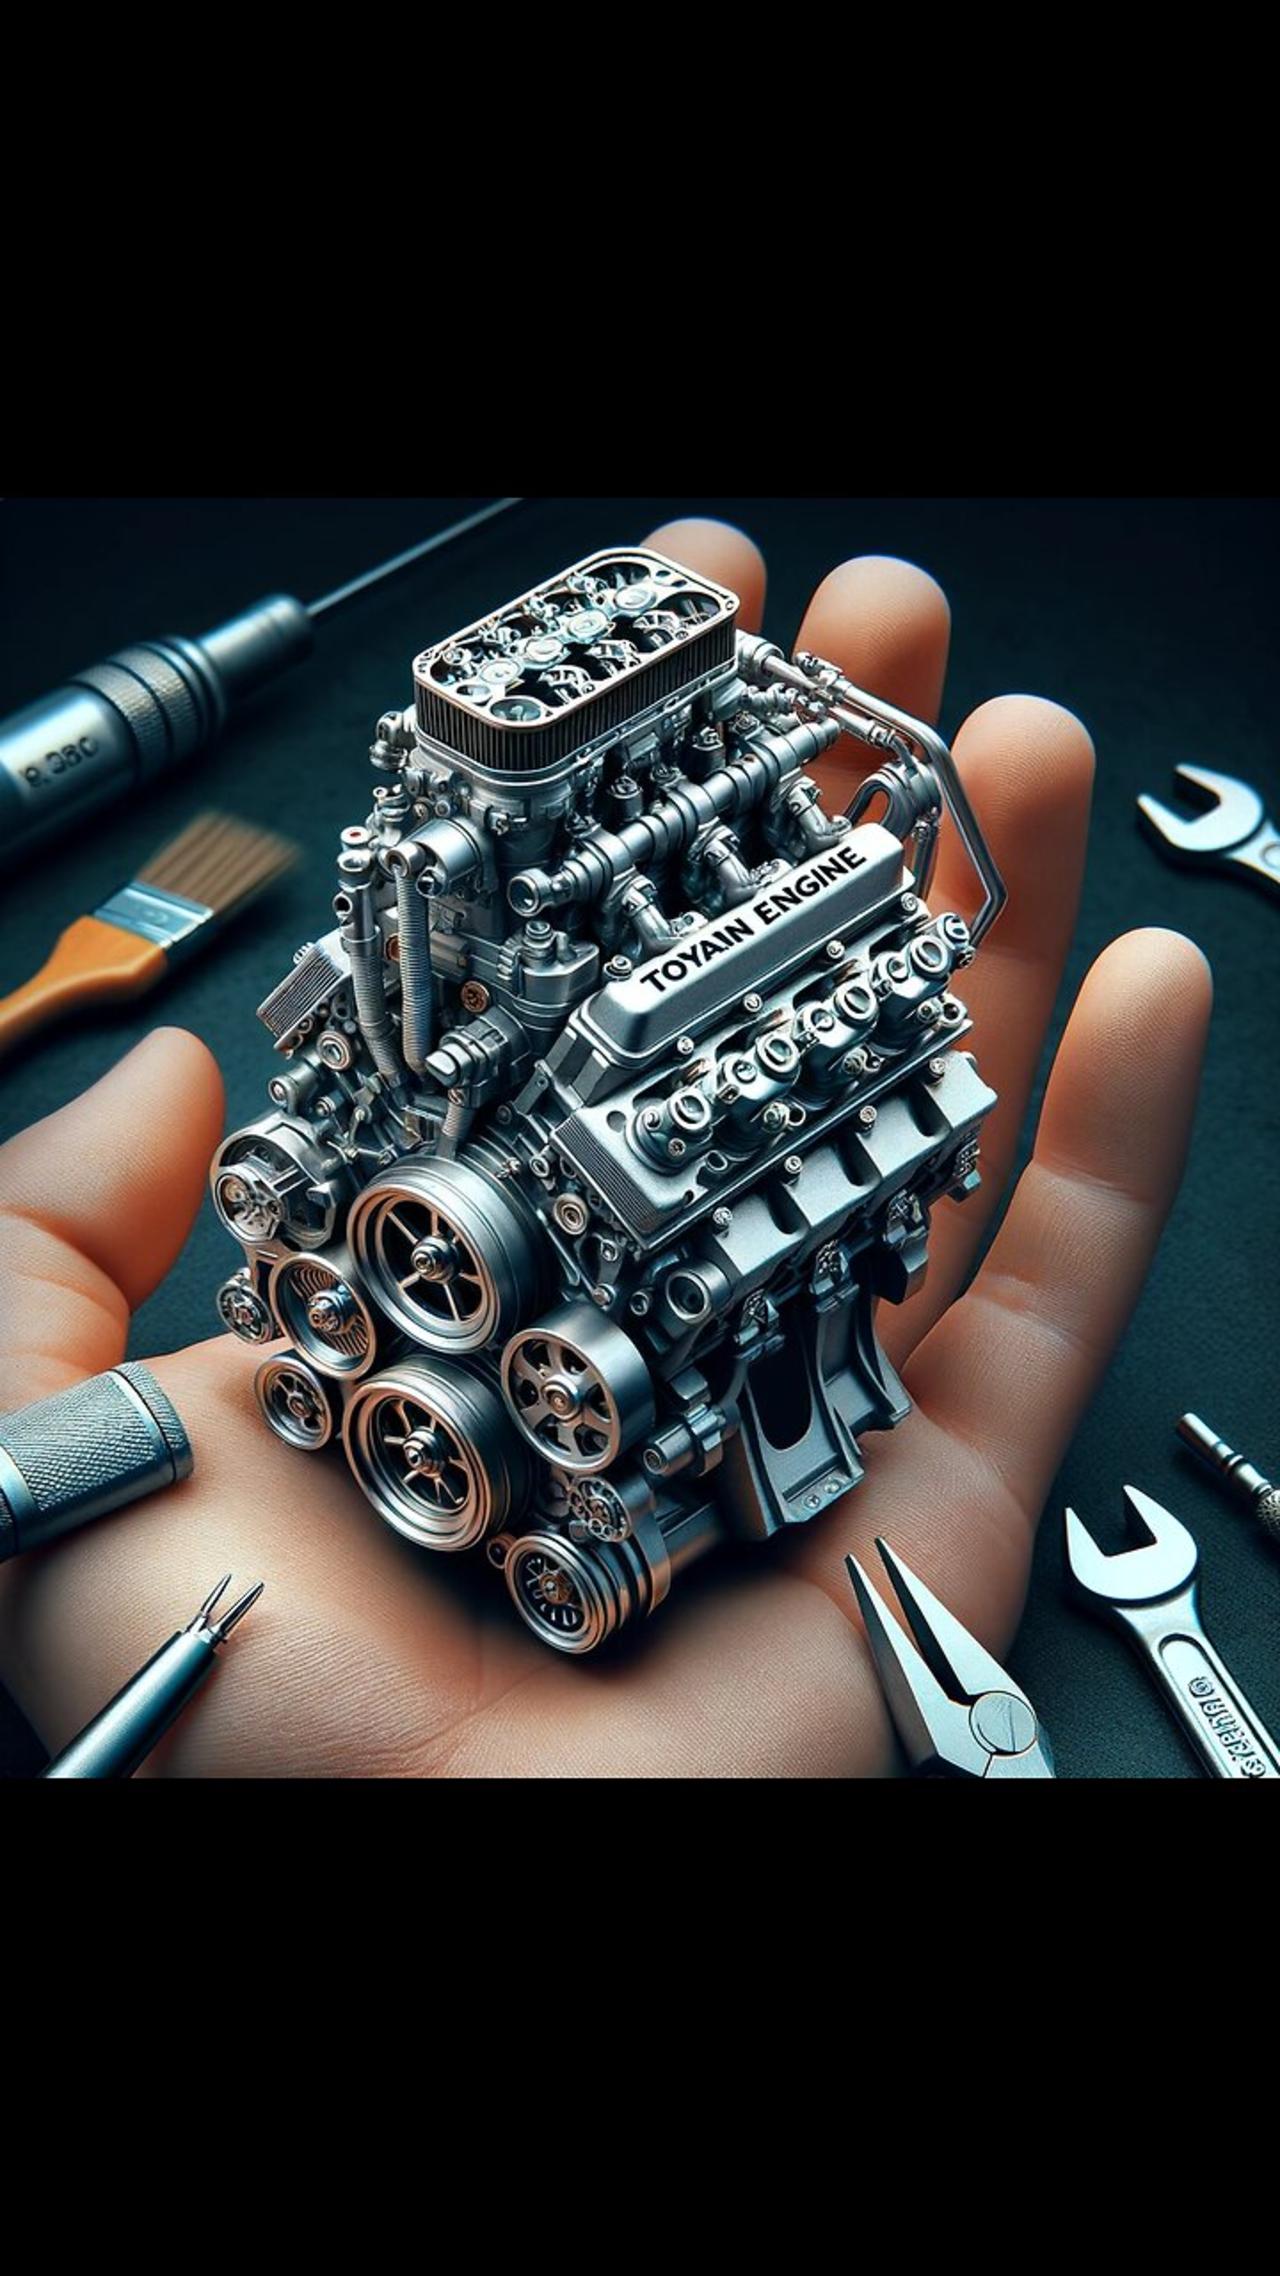 Toyan Engine V8 Model engine